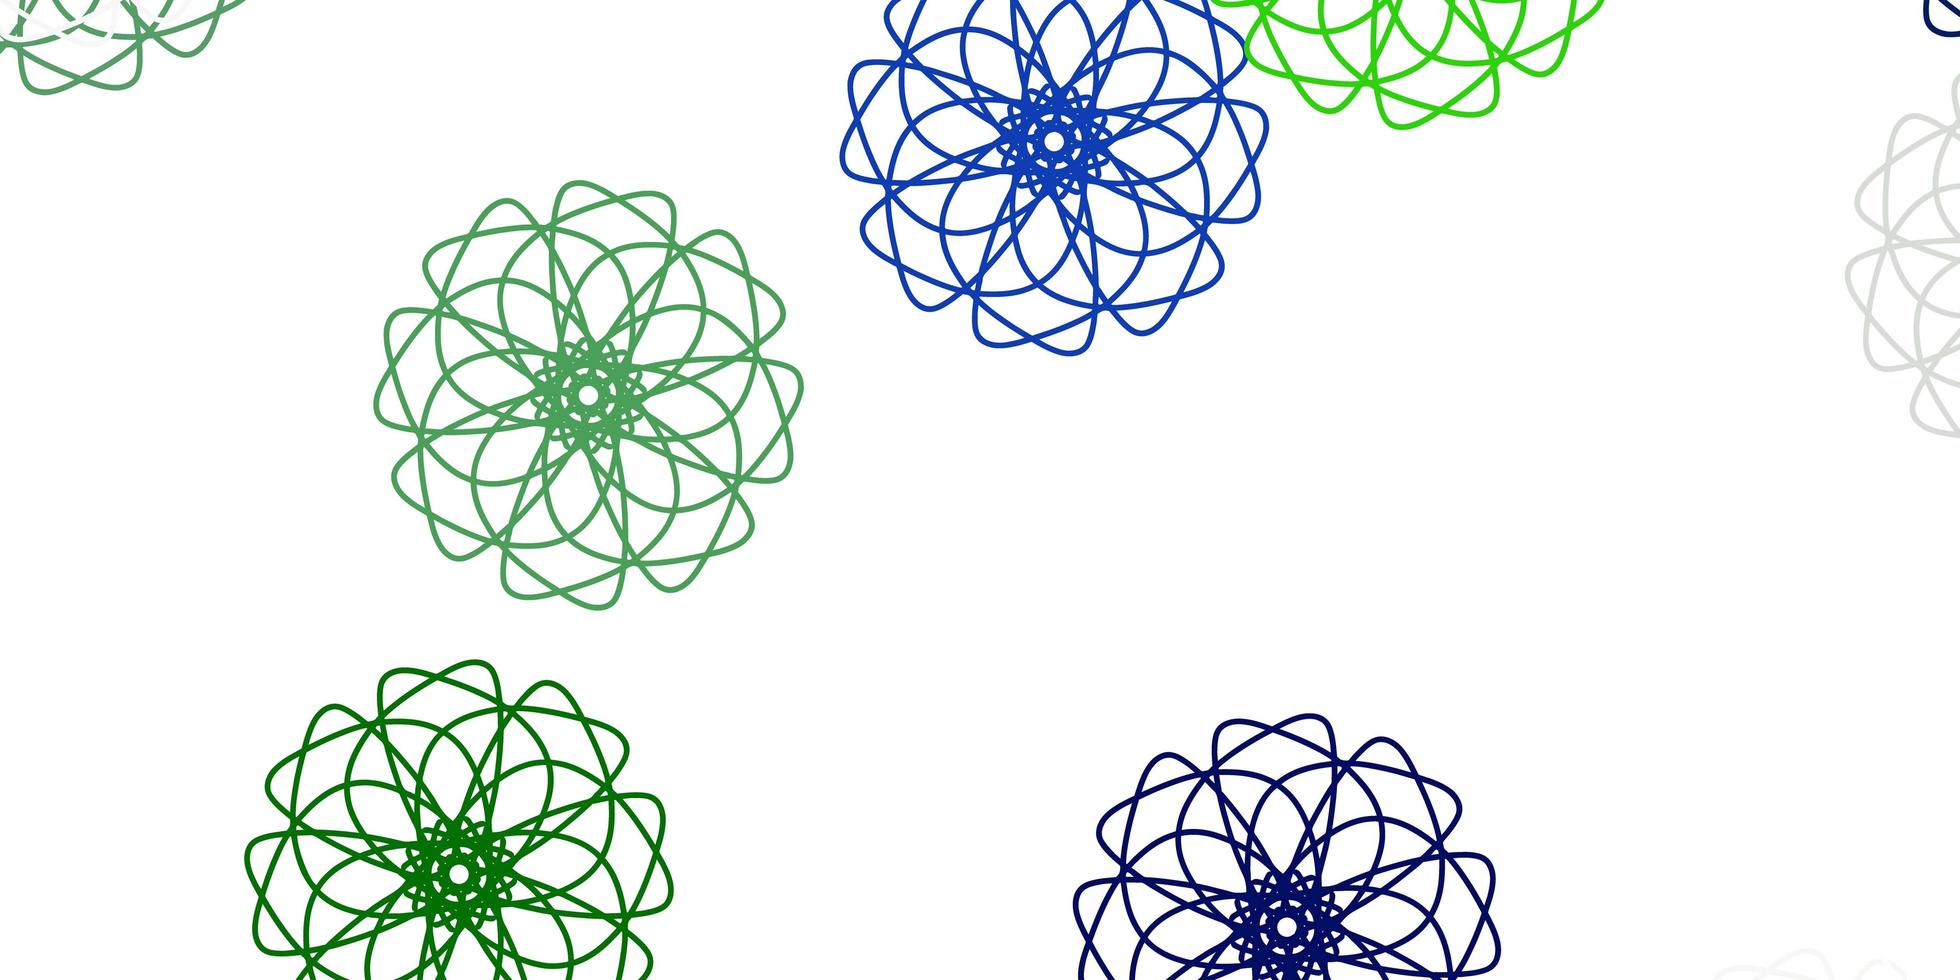 lichtblauw, groen vector doodle achtergrond met bloemen.